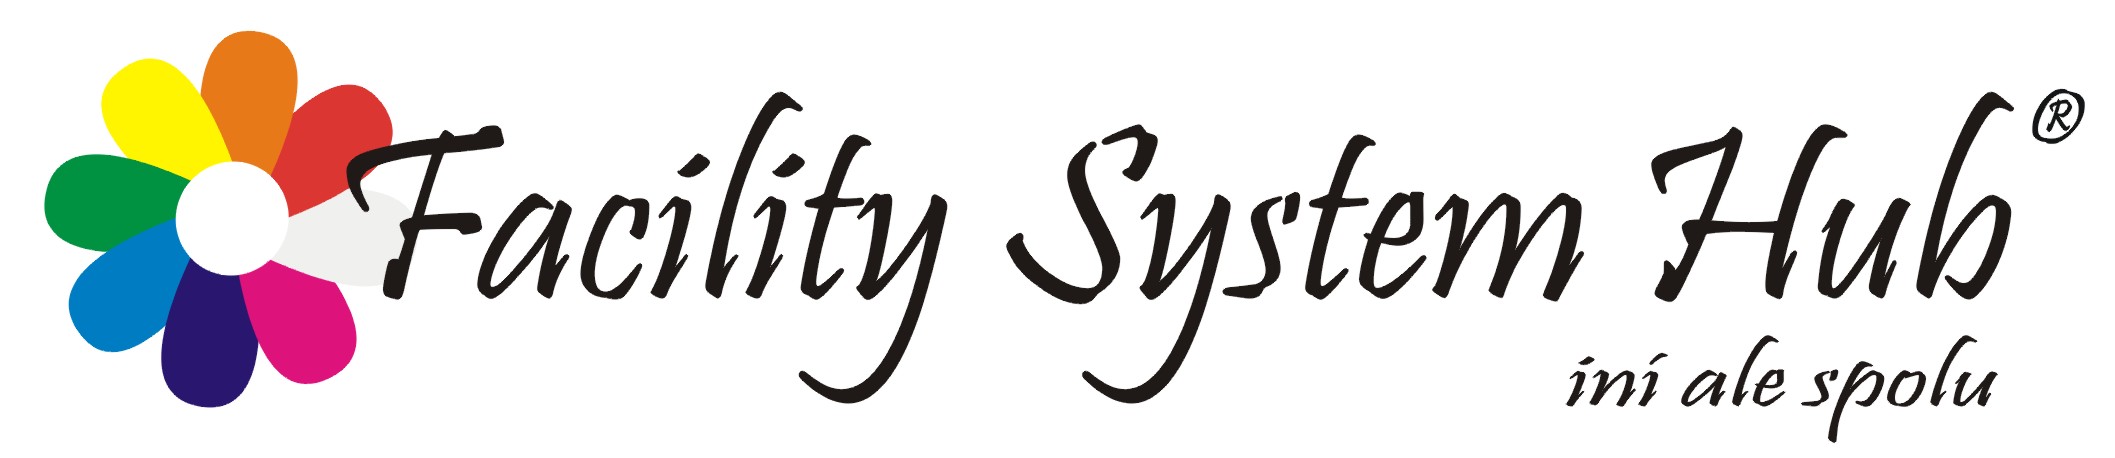 Facility Service Hub logo